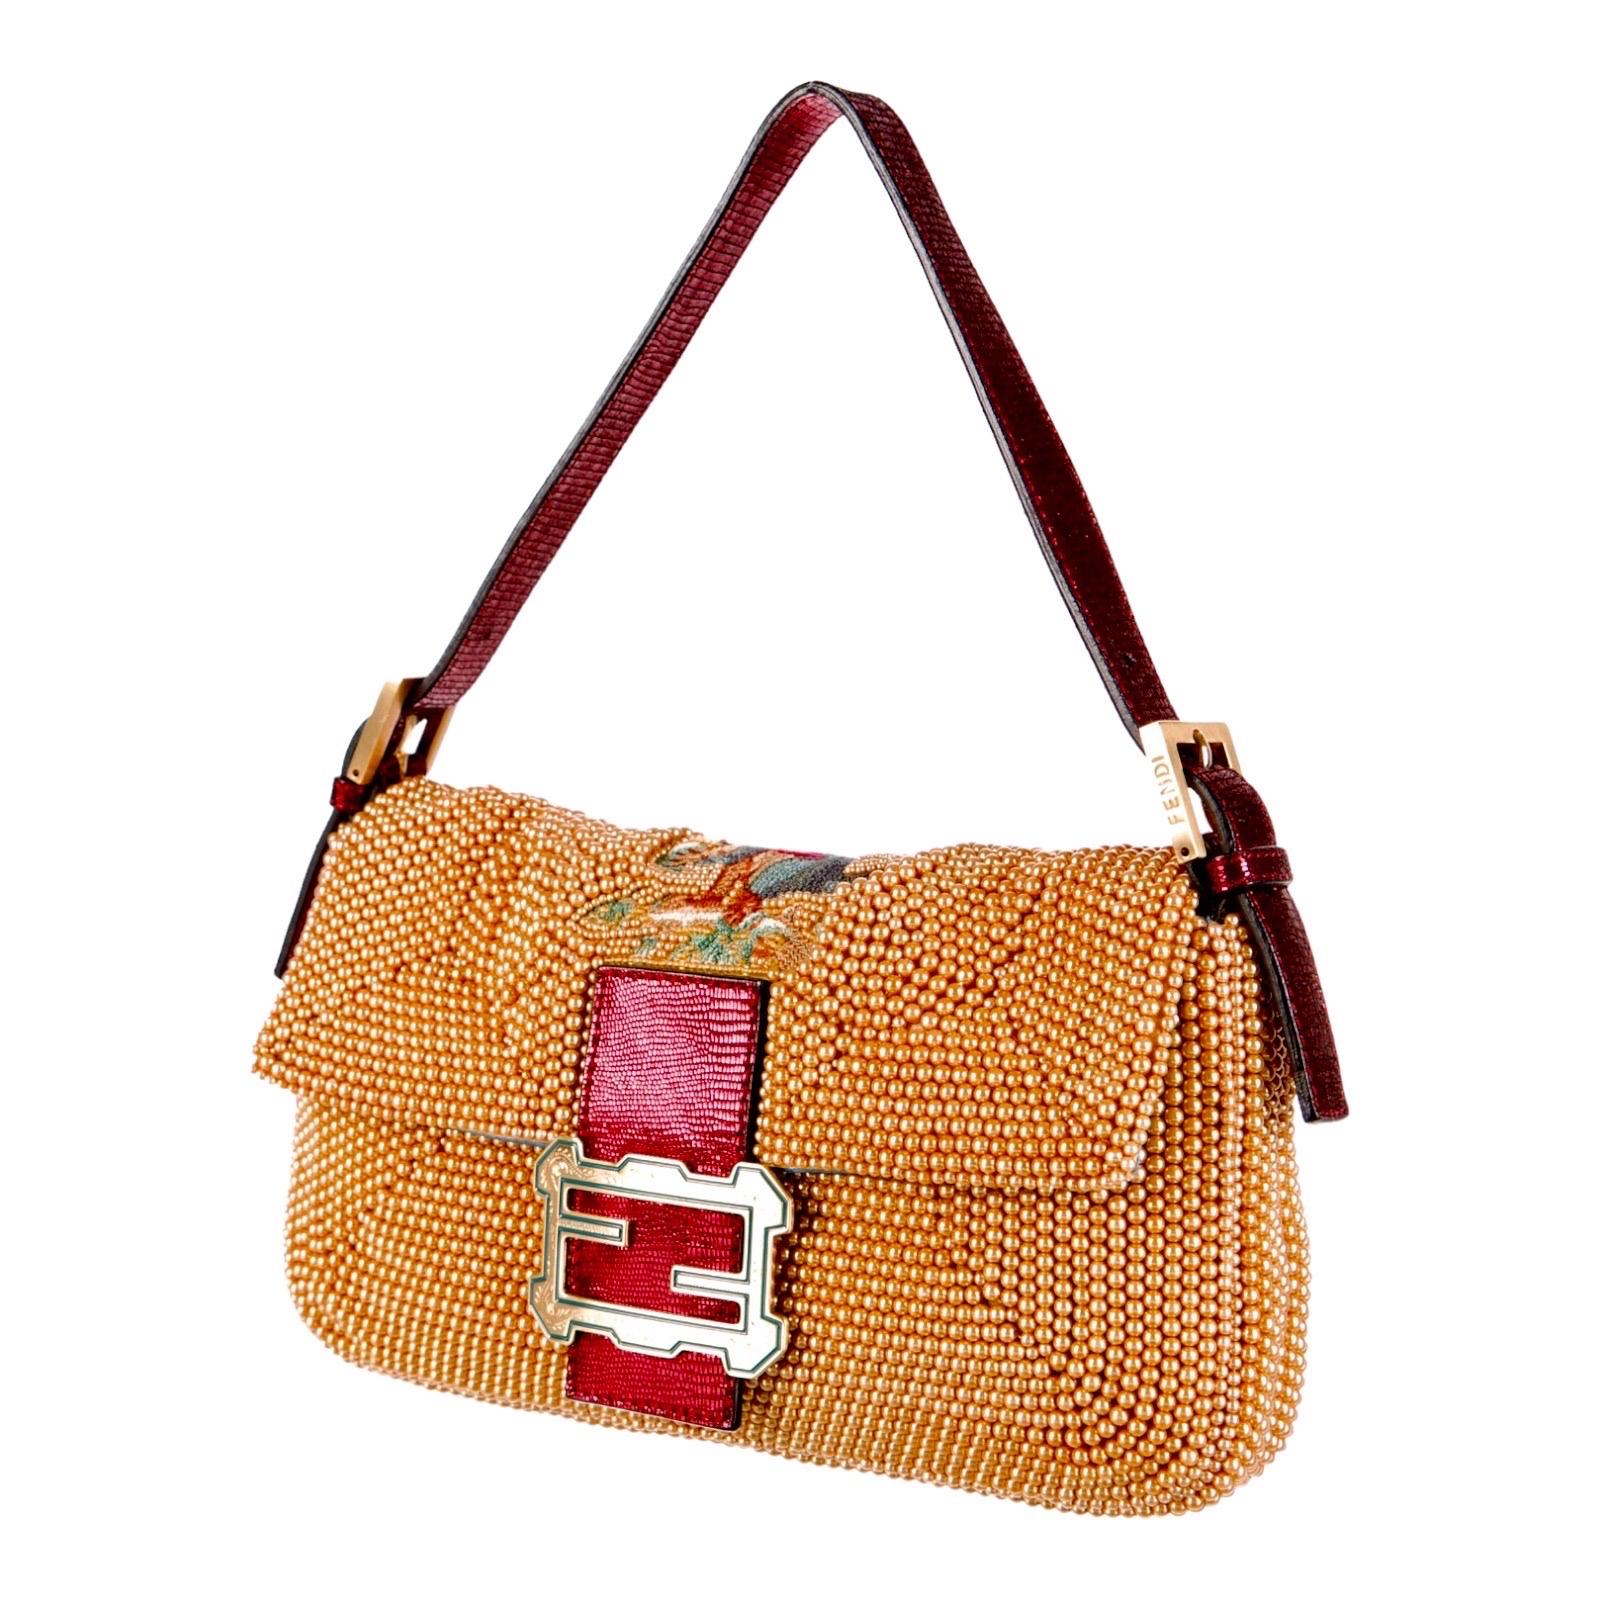 UNWORN Fendi Embroidered Golden Baguette Handbag Flap Bag Clutch - Full Set 3